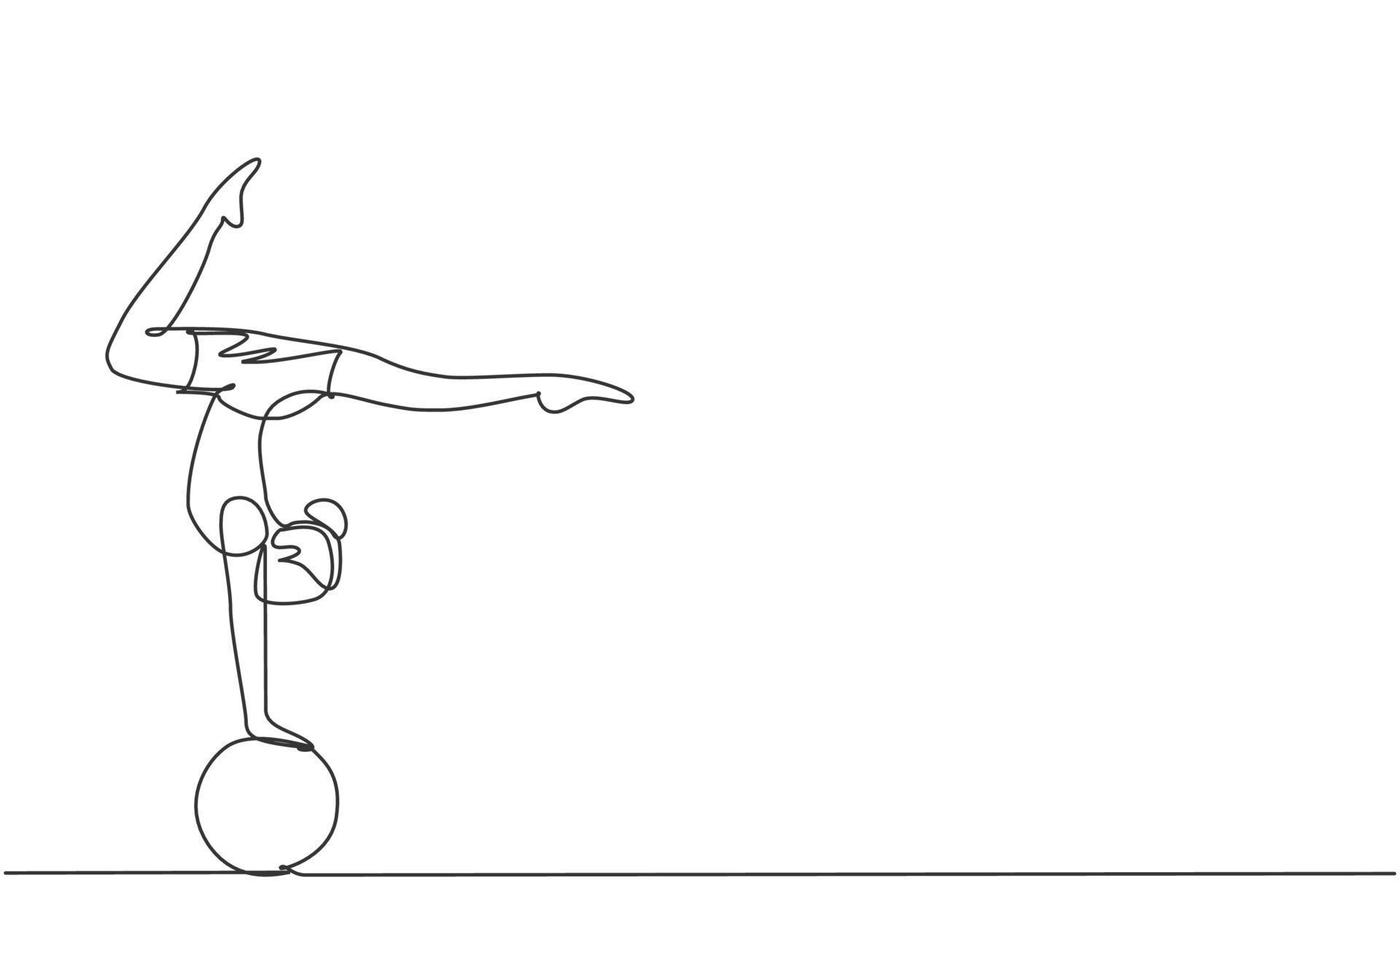 single one line drawing, uma acrobata feminina faz um stand de mão em uma bola de circo enquanto executa uma bela dança de pernas. precisa de destreza para fazê-lo. ilustração em vetor gráfico desenho linha contínua